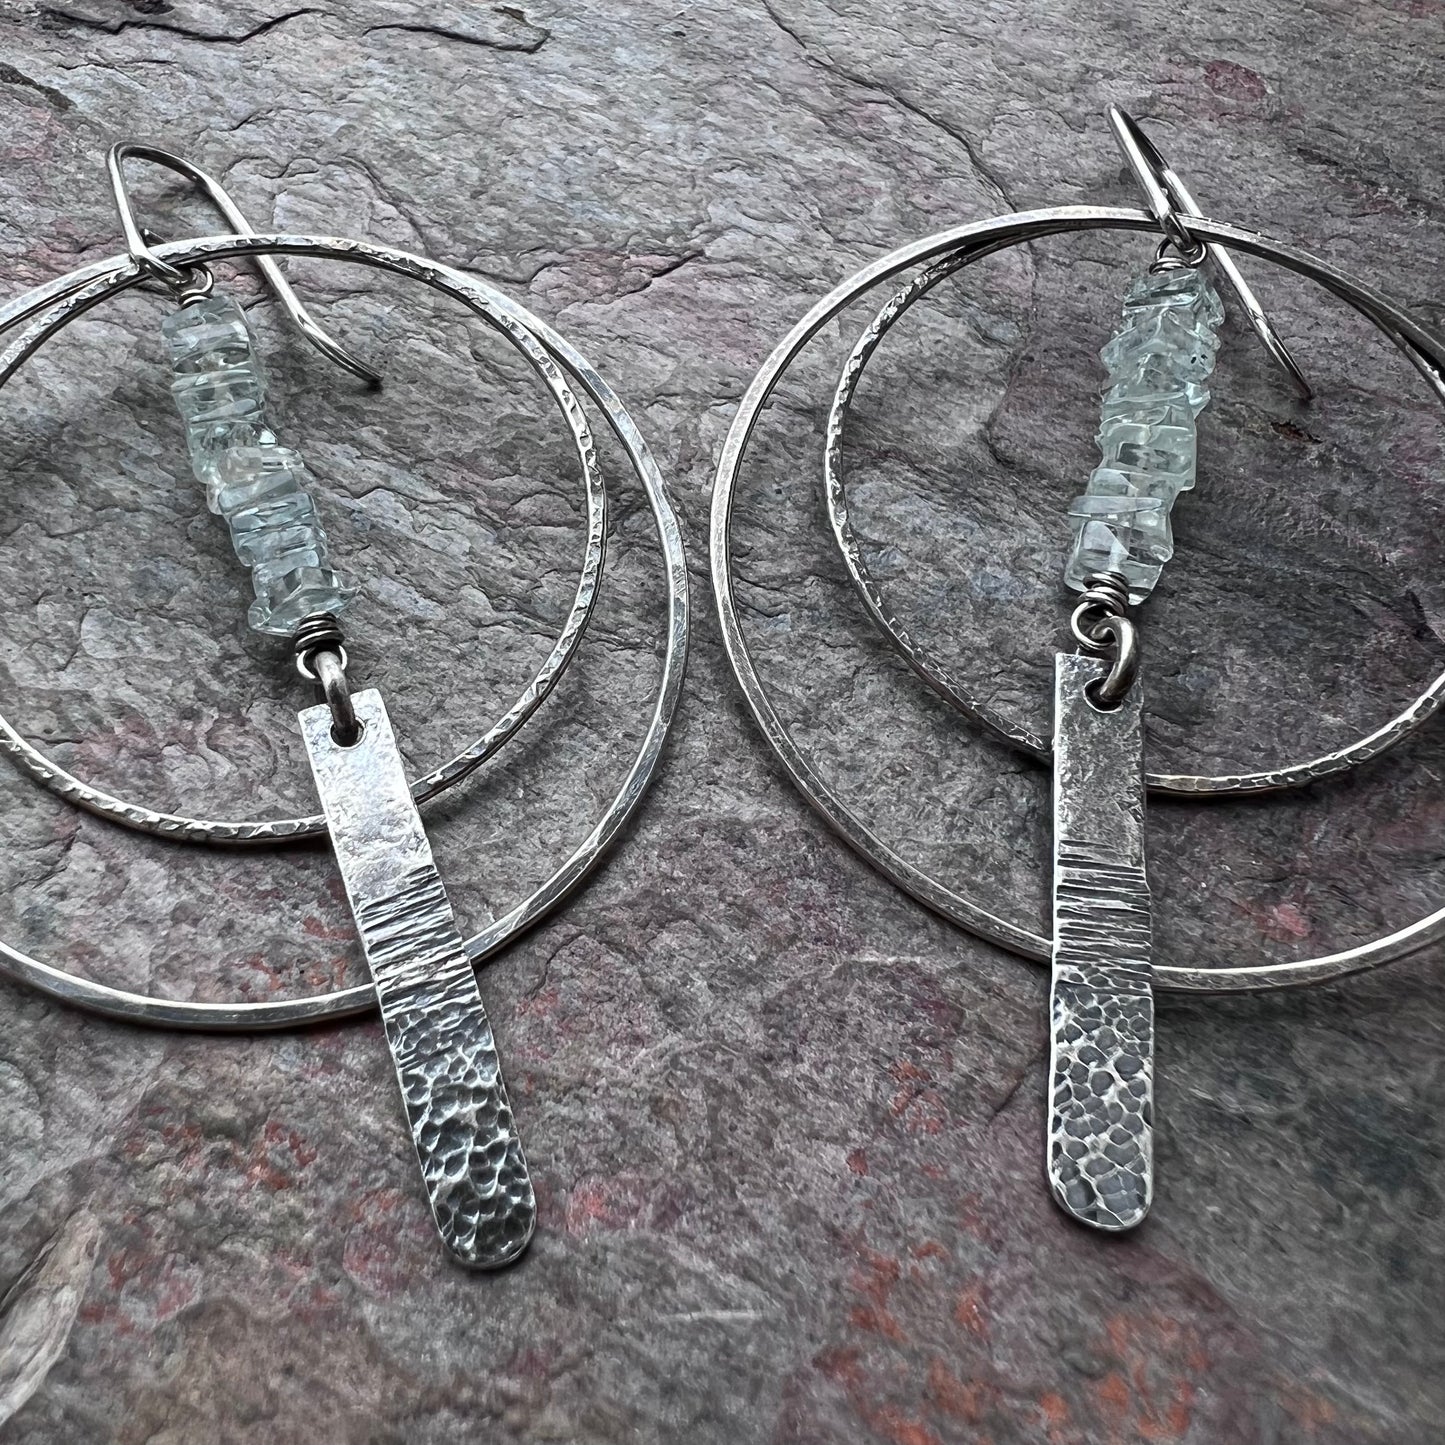 Aquamarine Sterling Silver Earrings - Genuine Aquamarine and Hammered Bars in Sterling Silver Hoop Earrings